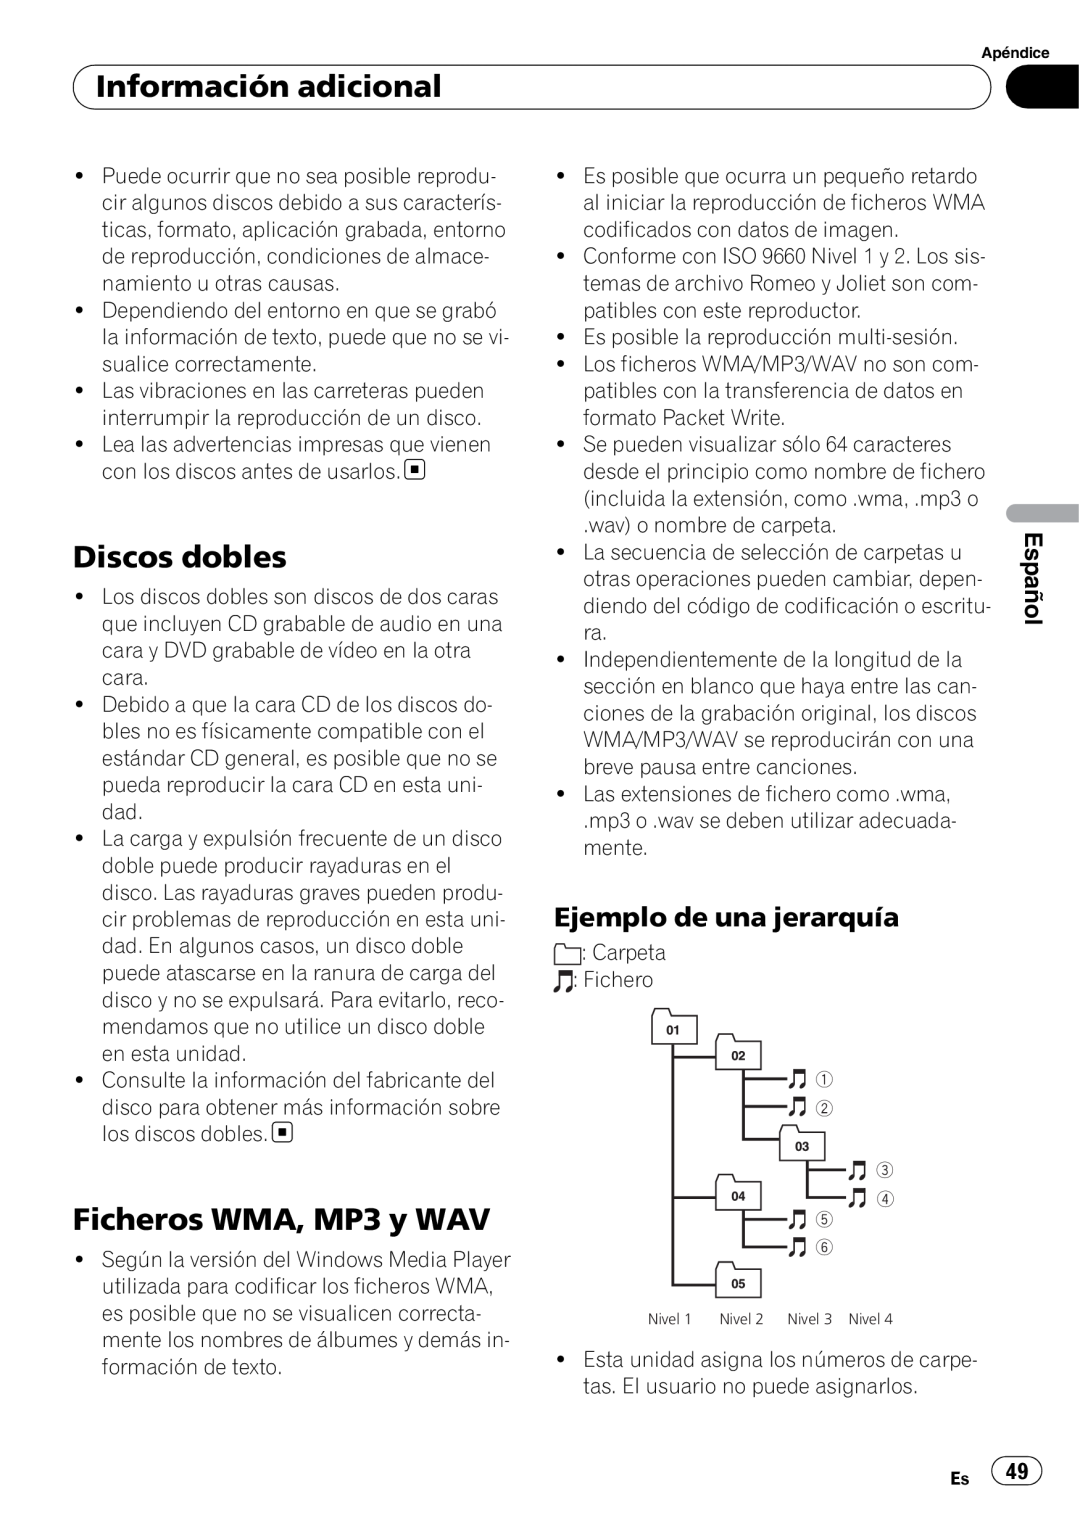 Pioneer DEH-1900MP operation manual Discos dobles, Ficheros WMA, MP3 y WAV, Ejemplo de una jerarquía, Información adicional 